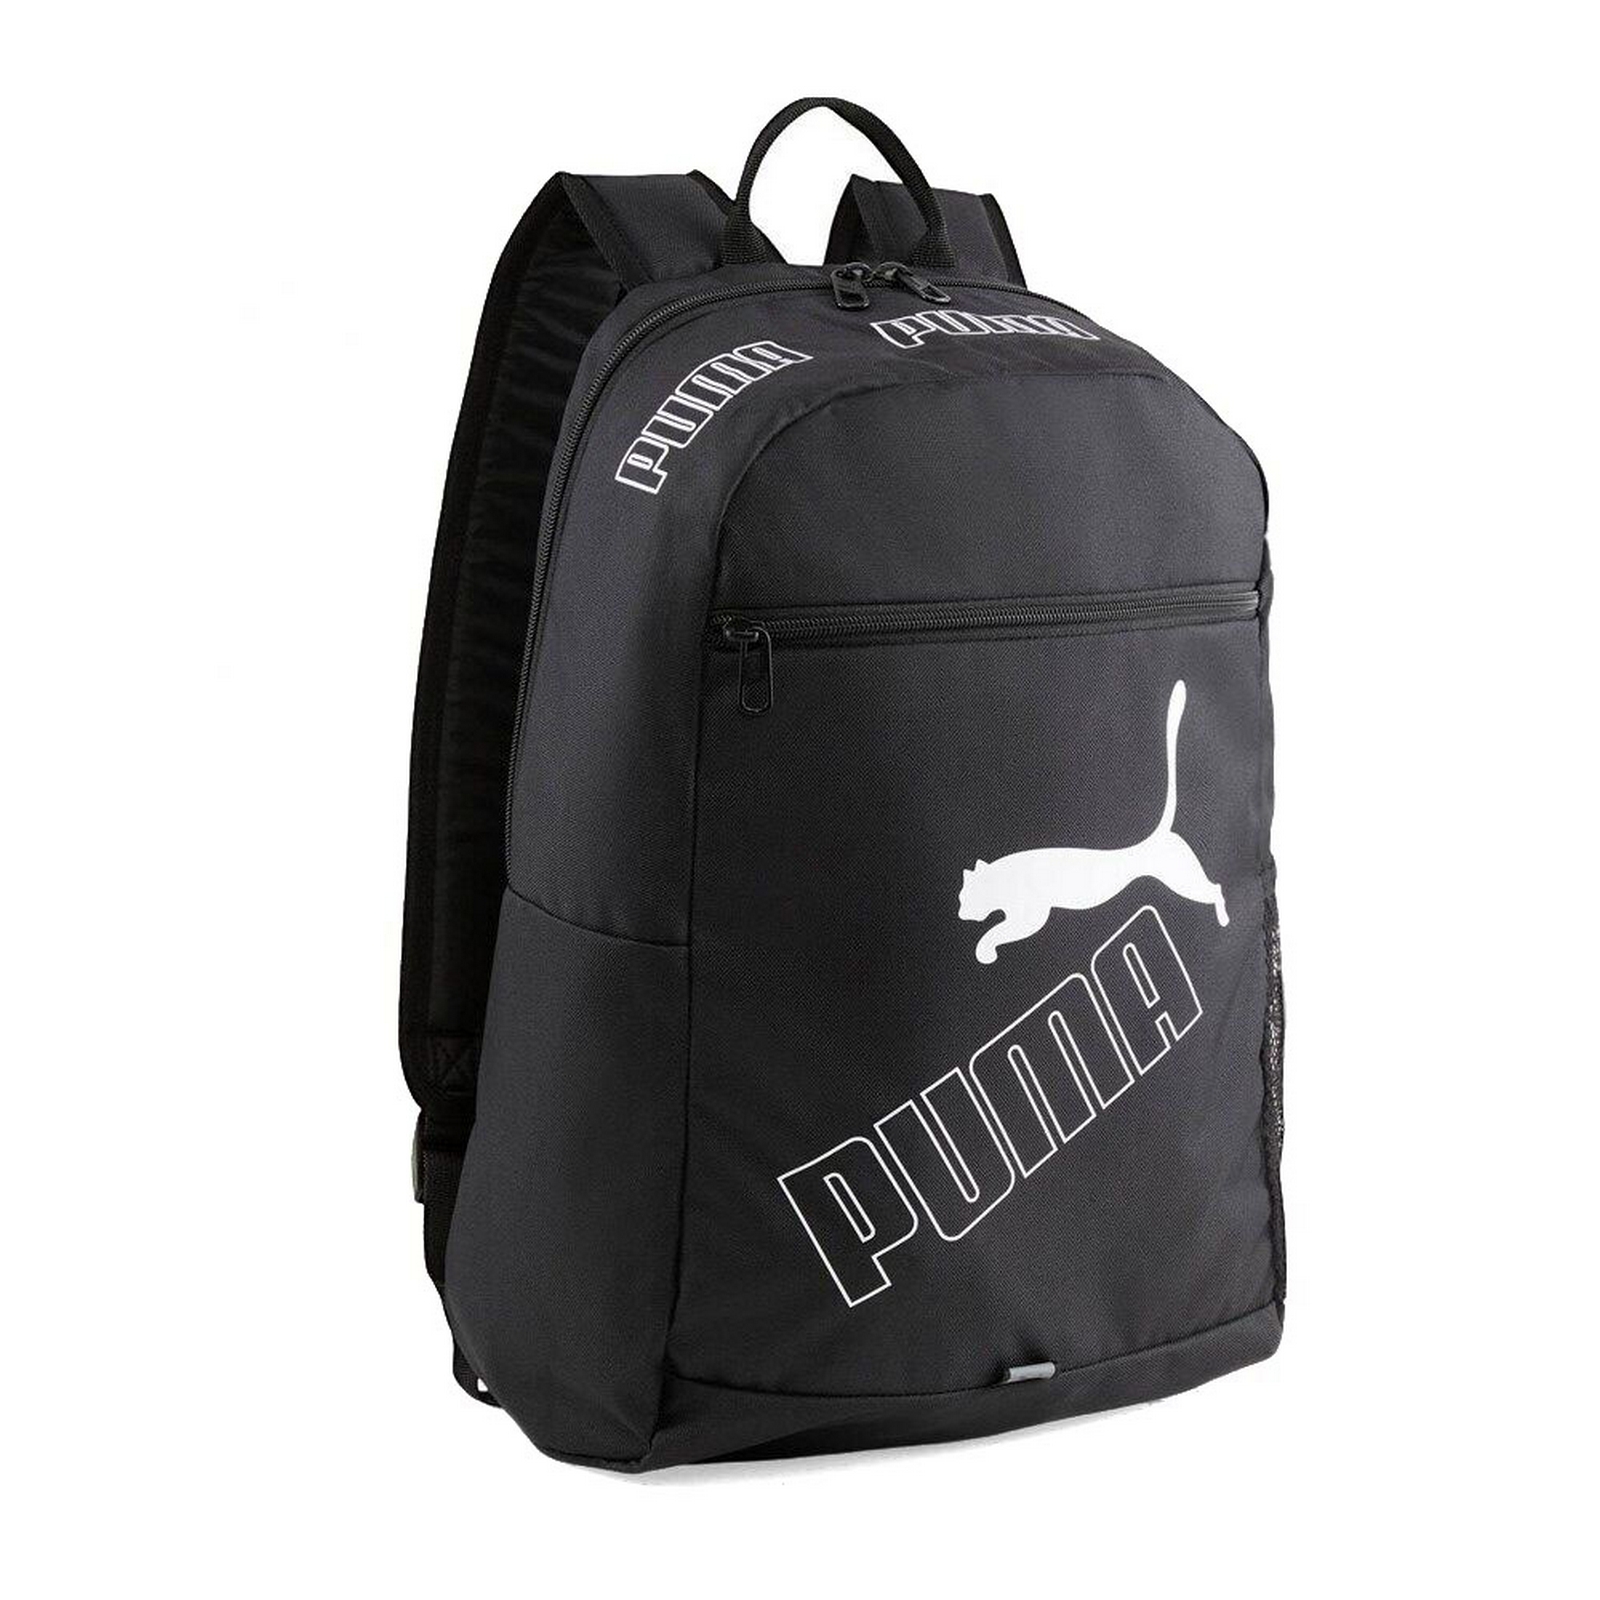   Phase Backpack II,  Puma 07995201 